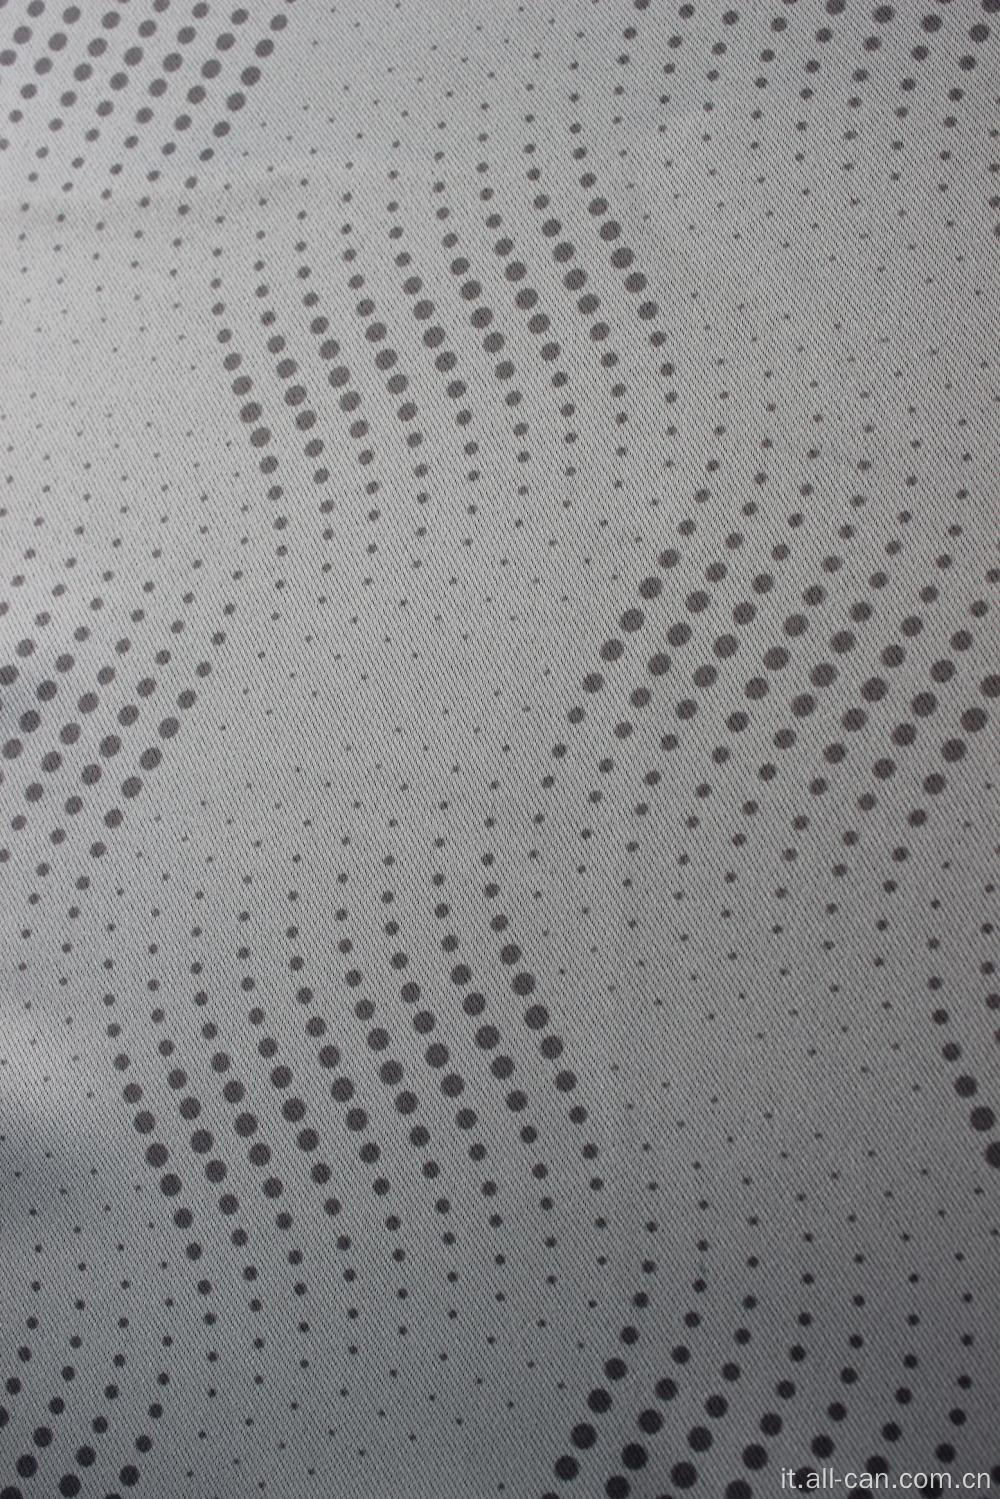 Tessuto per tende oscuranti stampato